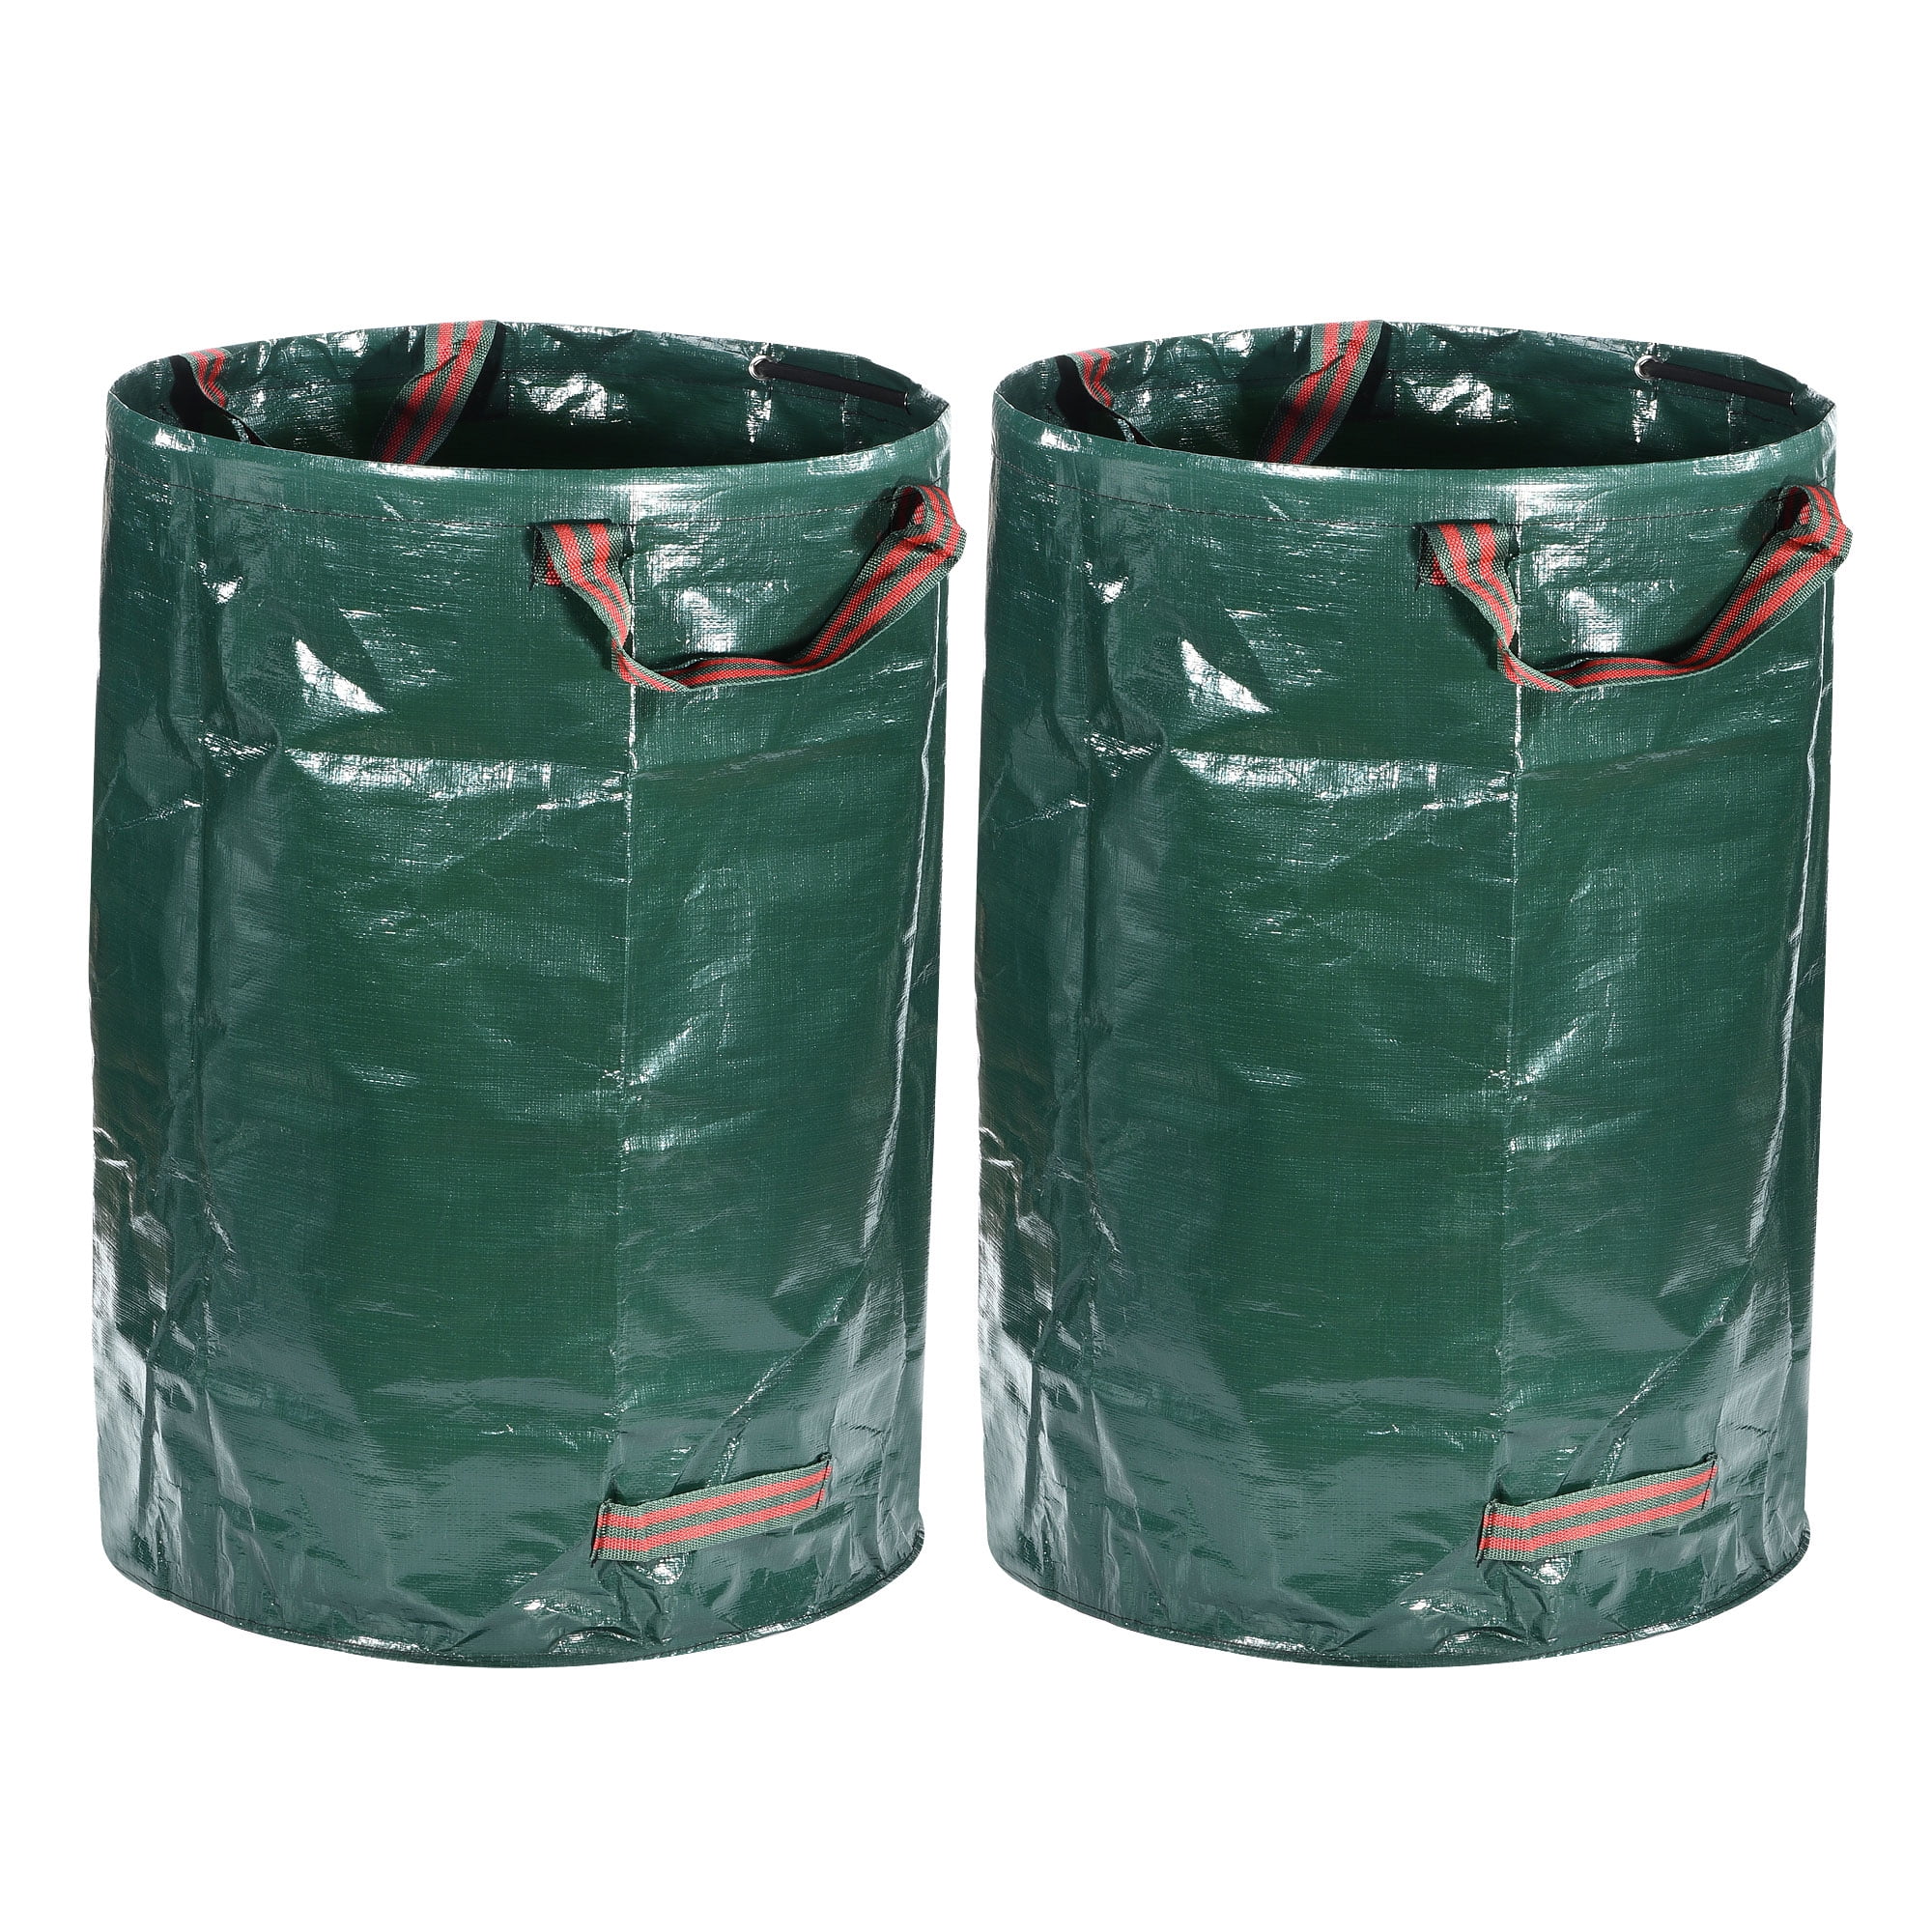 3 Pcs Lawn Bags, Reuseable Garden Waste Bags, 132gal/500L Lawn and Leaf Bag  Holder/ Heavy Duty Lawn Pool Yard Waste Bags/ Waterproof Debris Bag 